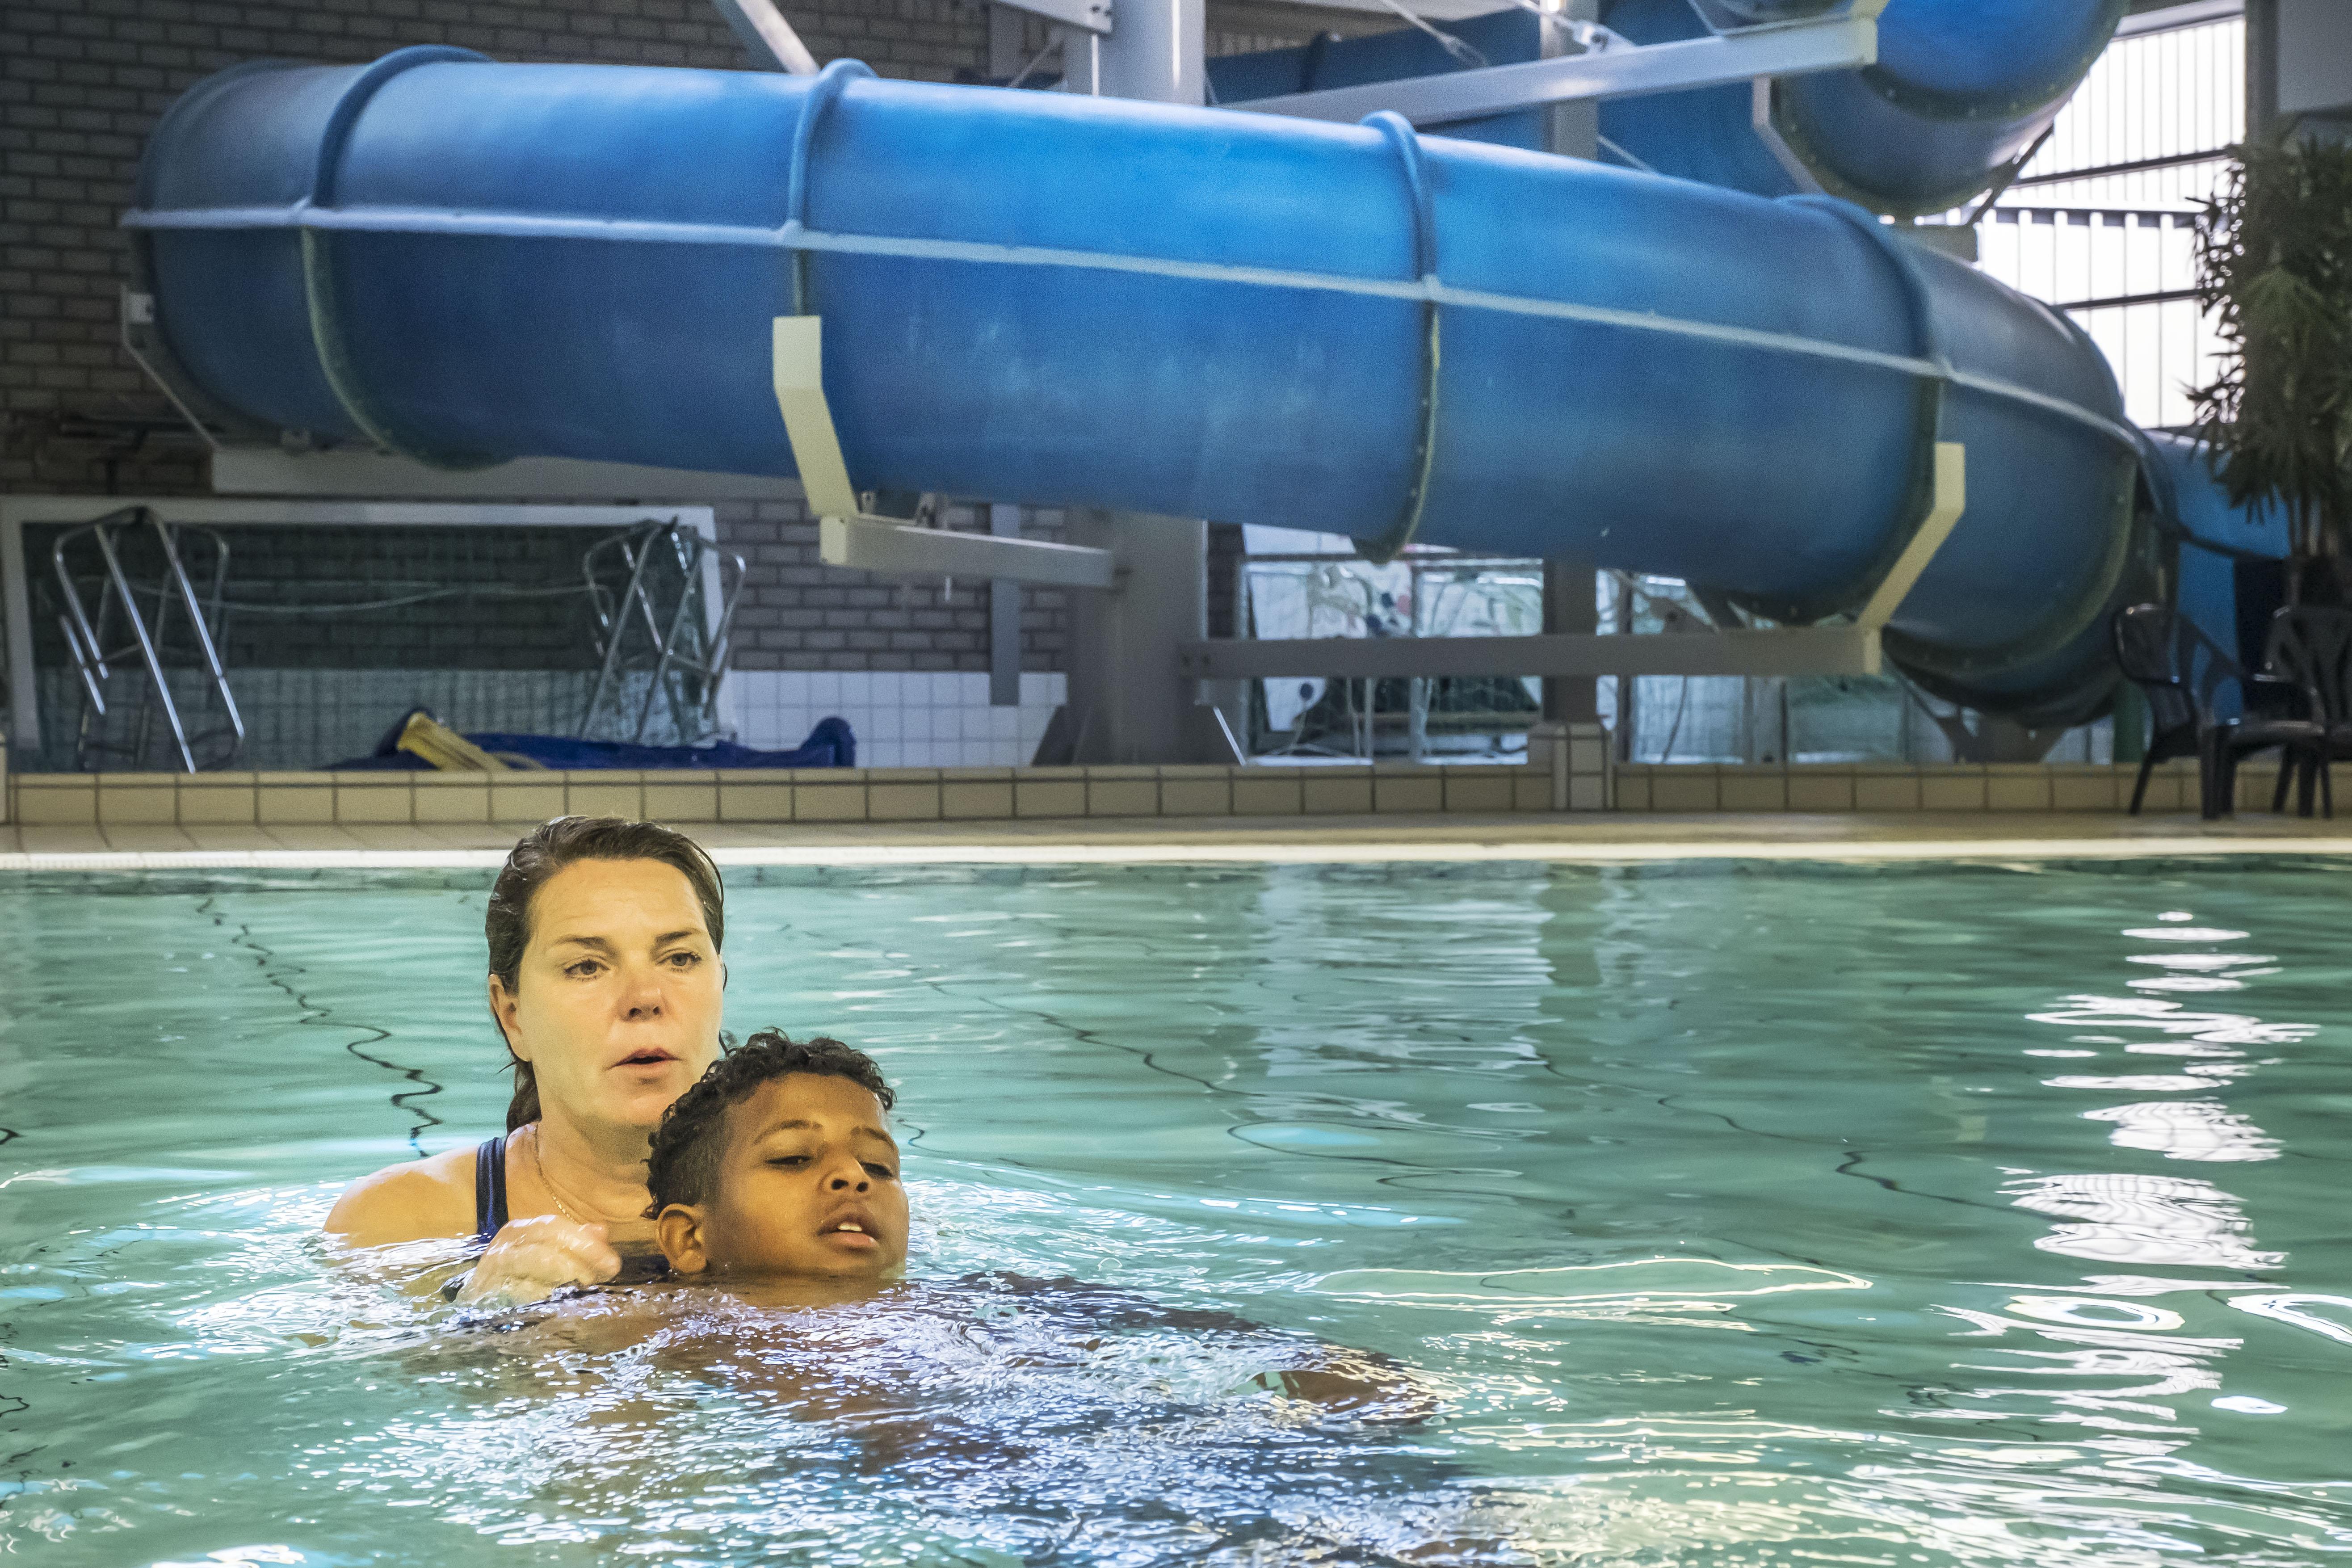 Meisjes uit het azc moeten soms aan in zwembad maar ze zwemmen wel en dat is belangrijk' [video] | Noordhollandsdagblad